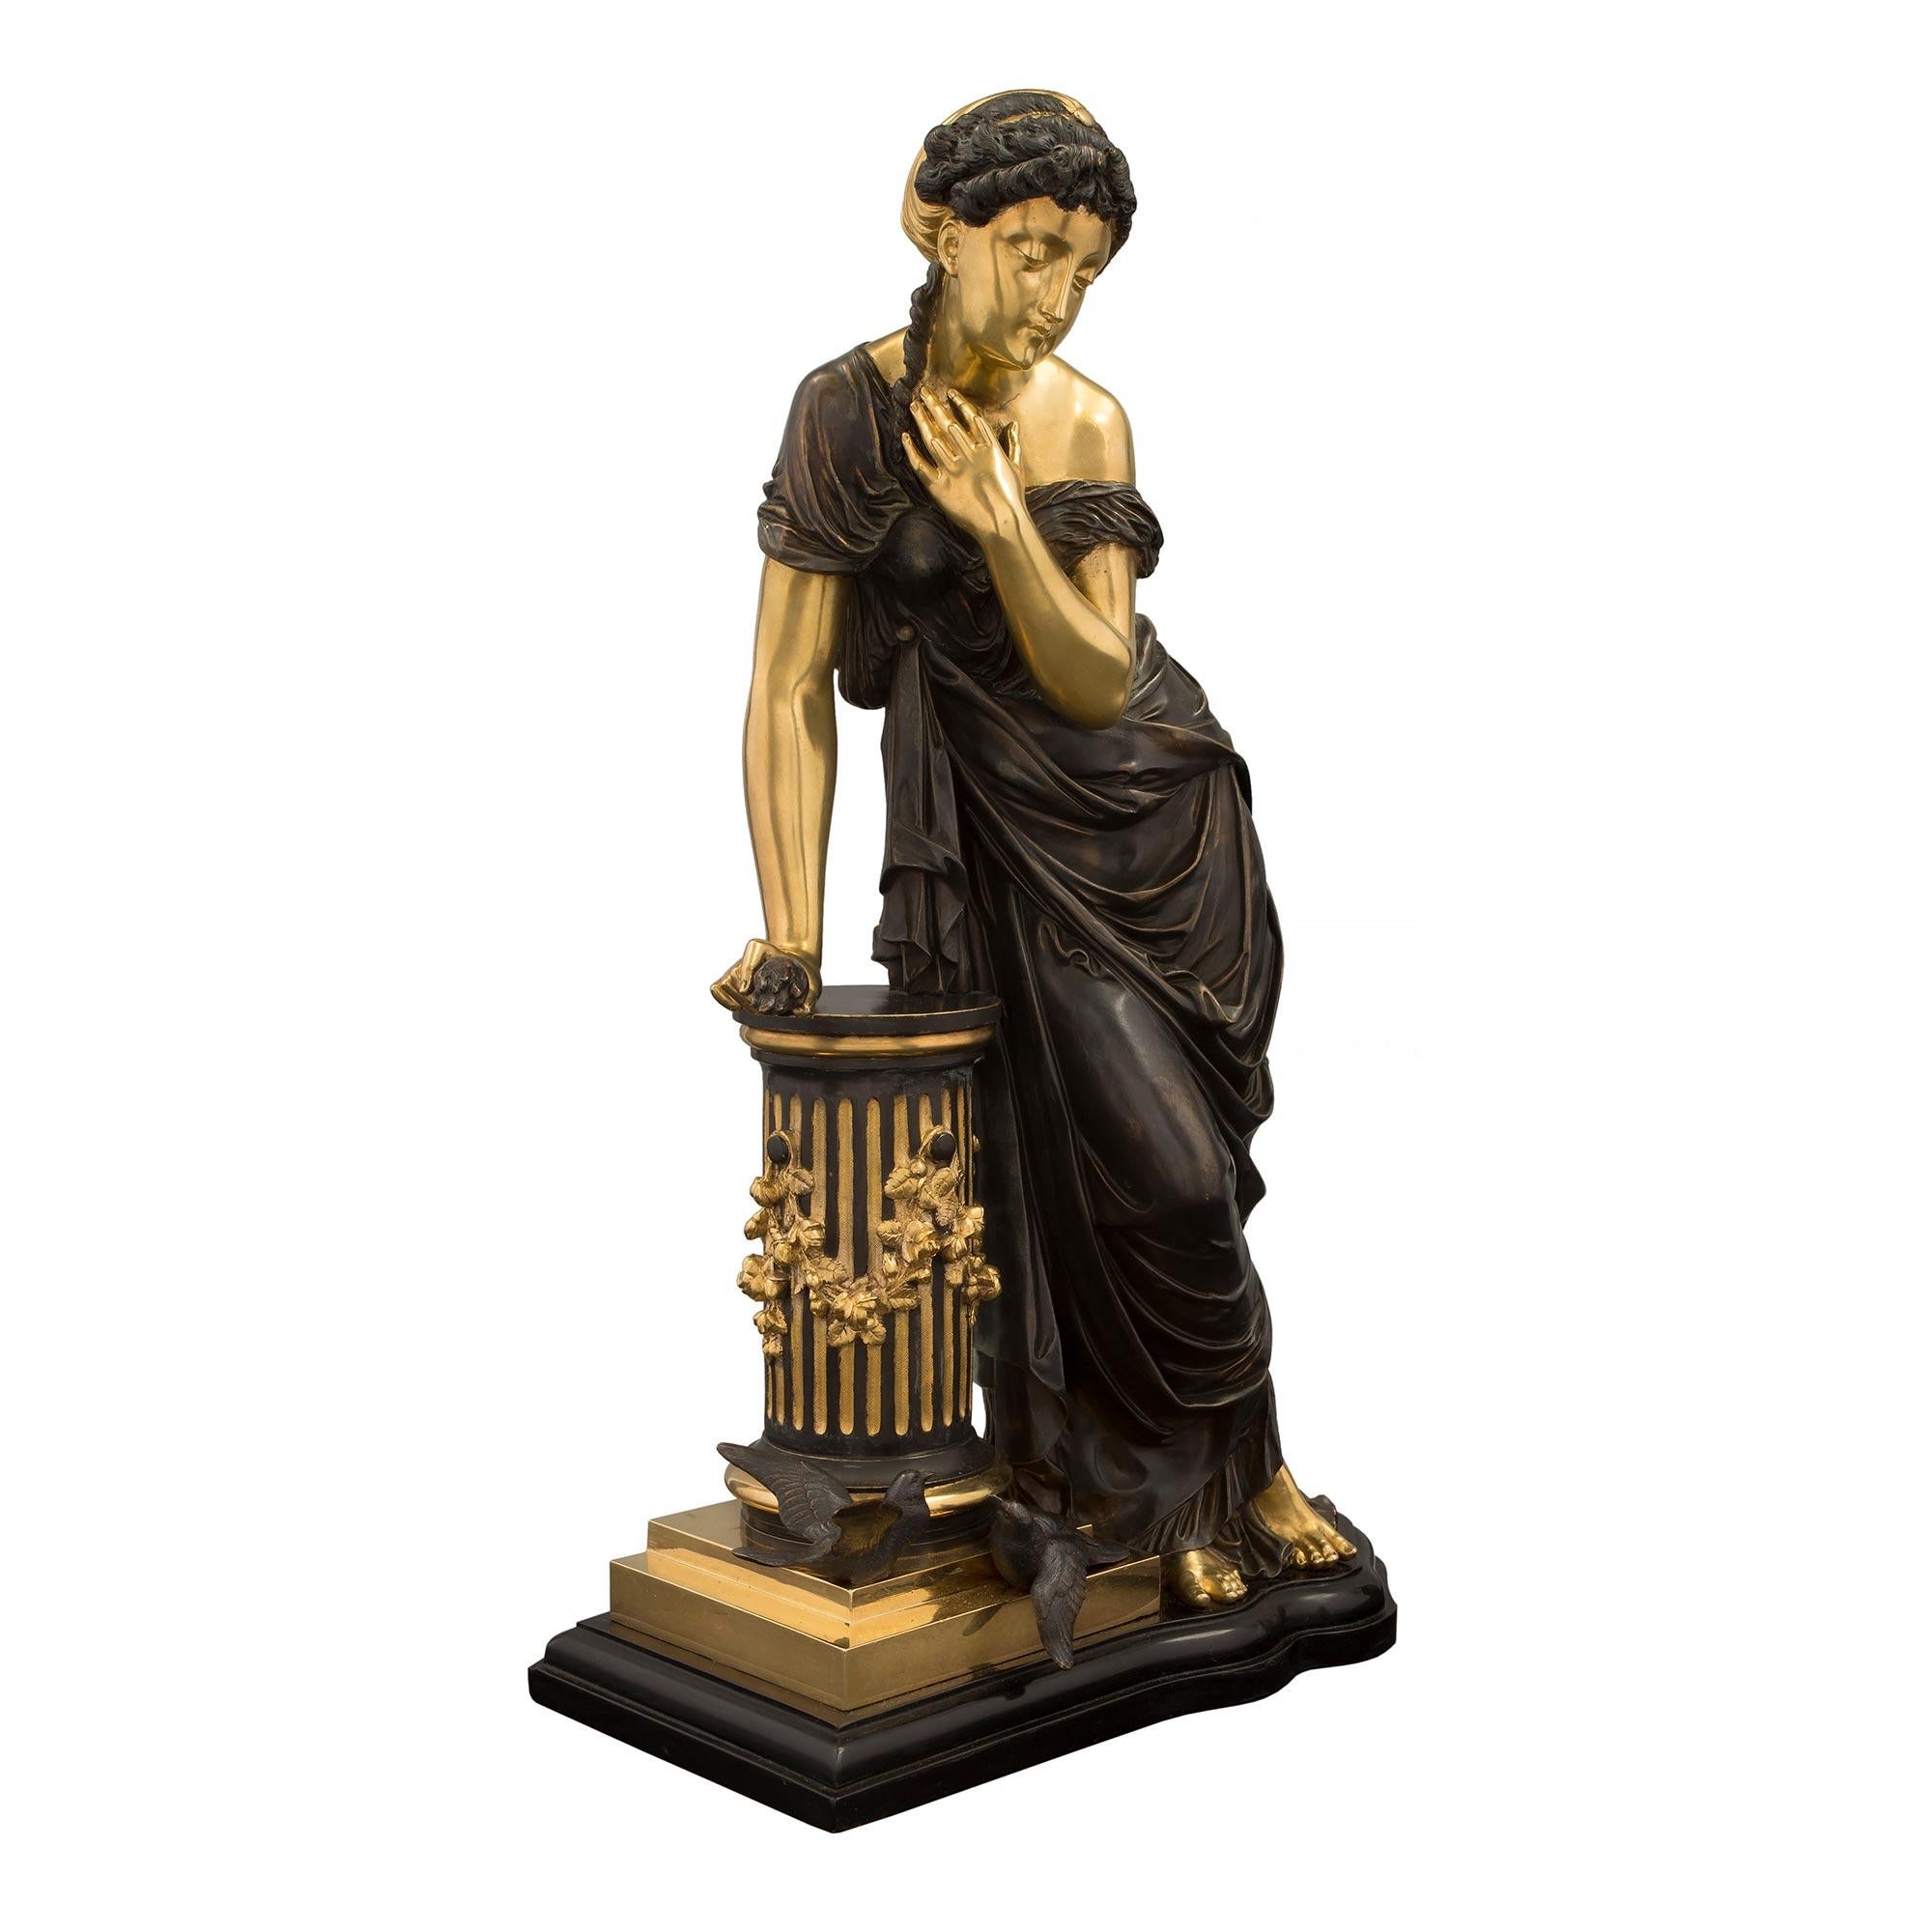 Très élégante statue d'une belle jeune fille en bronze patiné et bronze doré du XIXe siècle, attribuée à Pierre Louis Detrier. La statue est surélevée par une belle base de forme festonnée avec une bordure mouchetée où se tient la belle dame. La